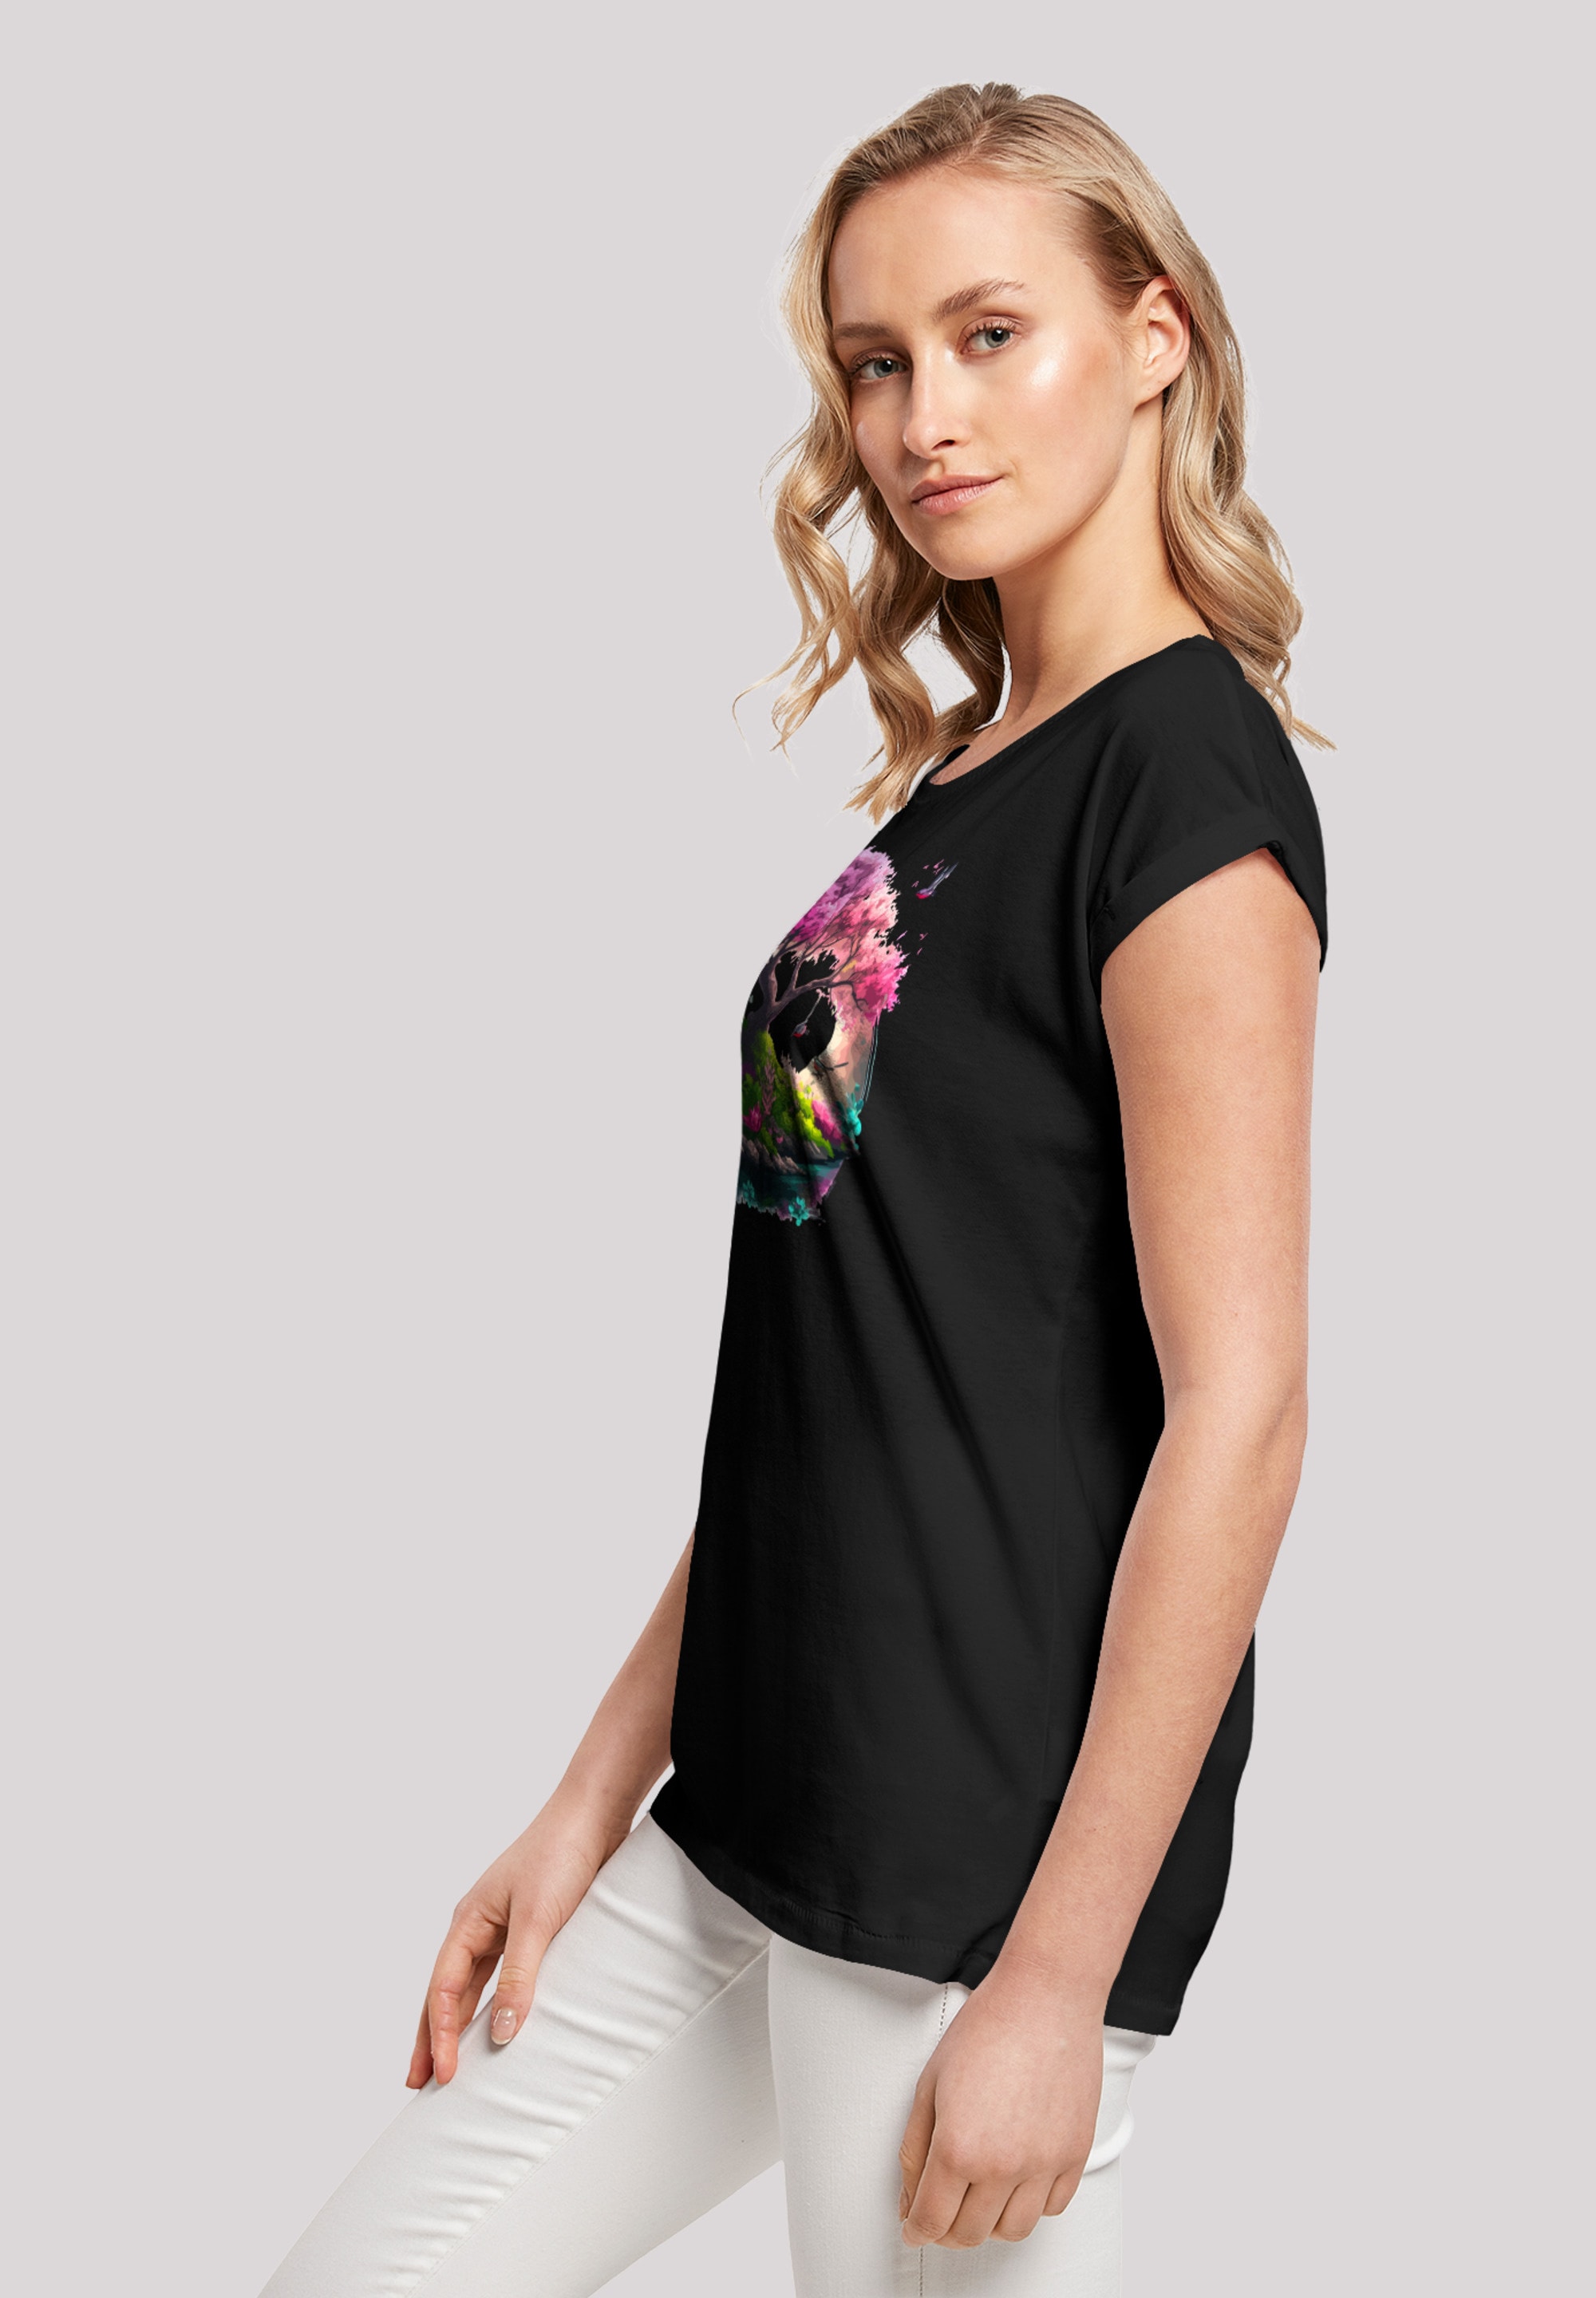 | Print online F4NT4STIC bestellen »Kirschblüten BAUR Baum«, T-Shirt